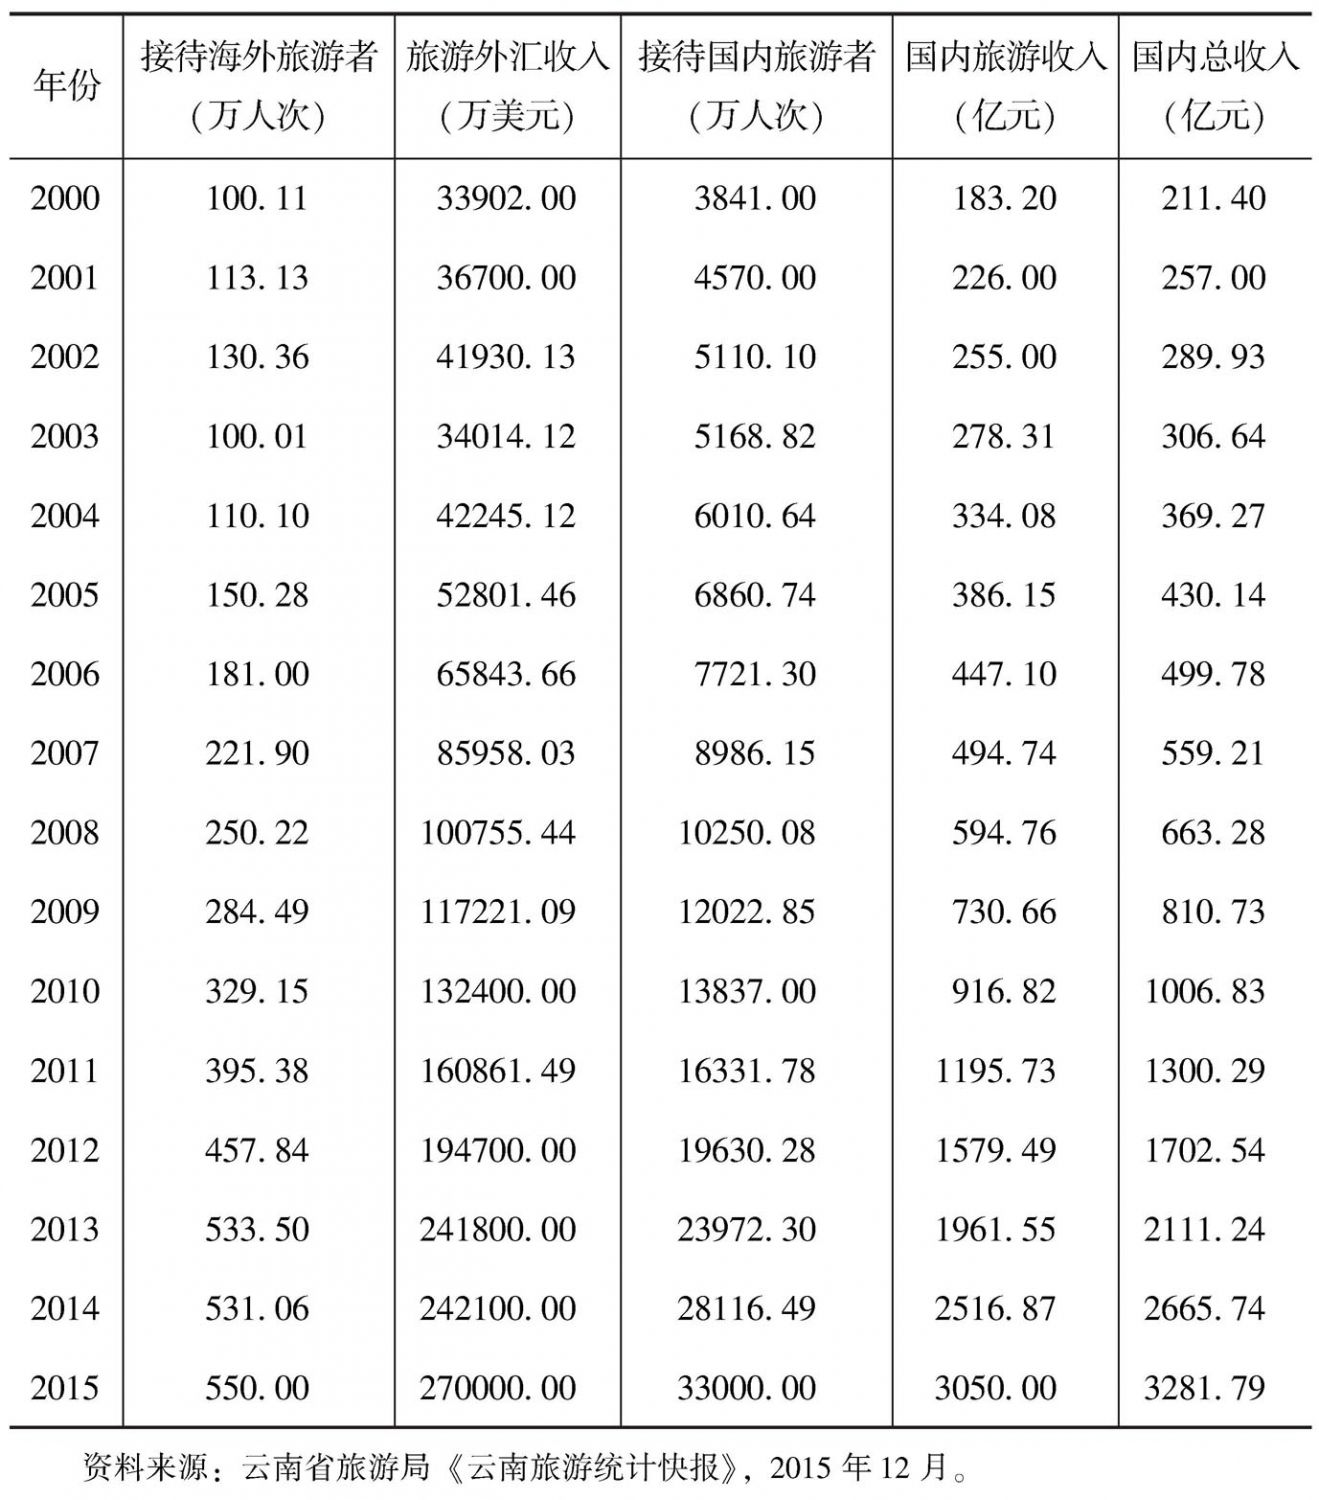 表4-1 2000～2015年云南省主要旅游经济指标统计